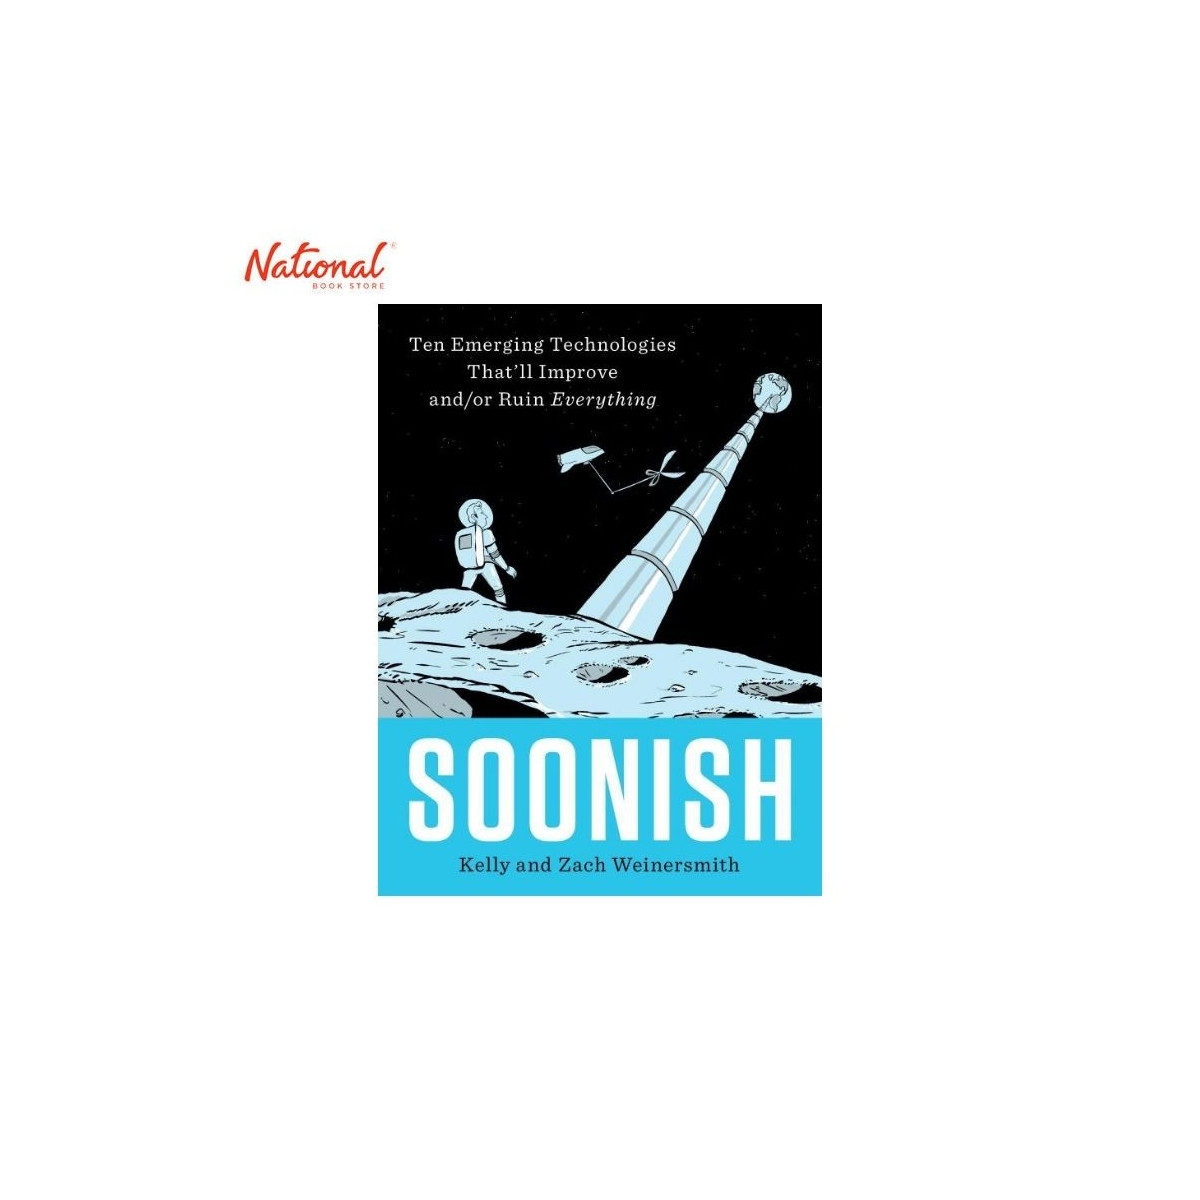 Soonish Hardcover by Kelly Weinersmith and Zach Weinersmith